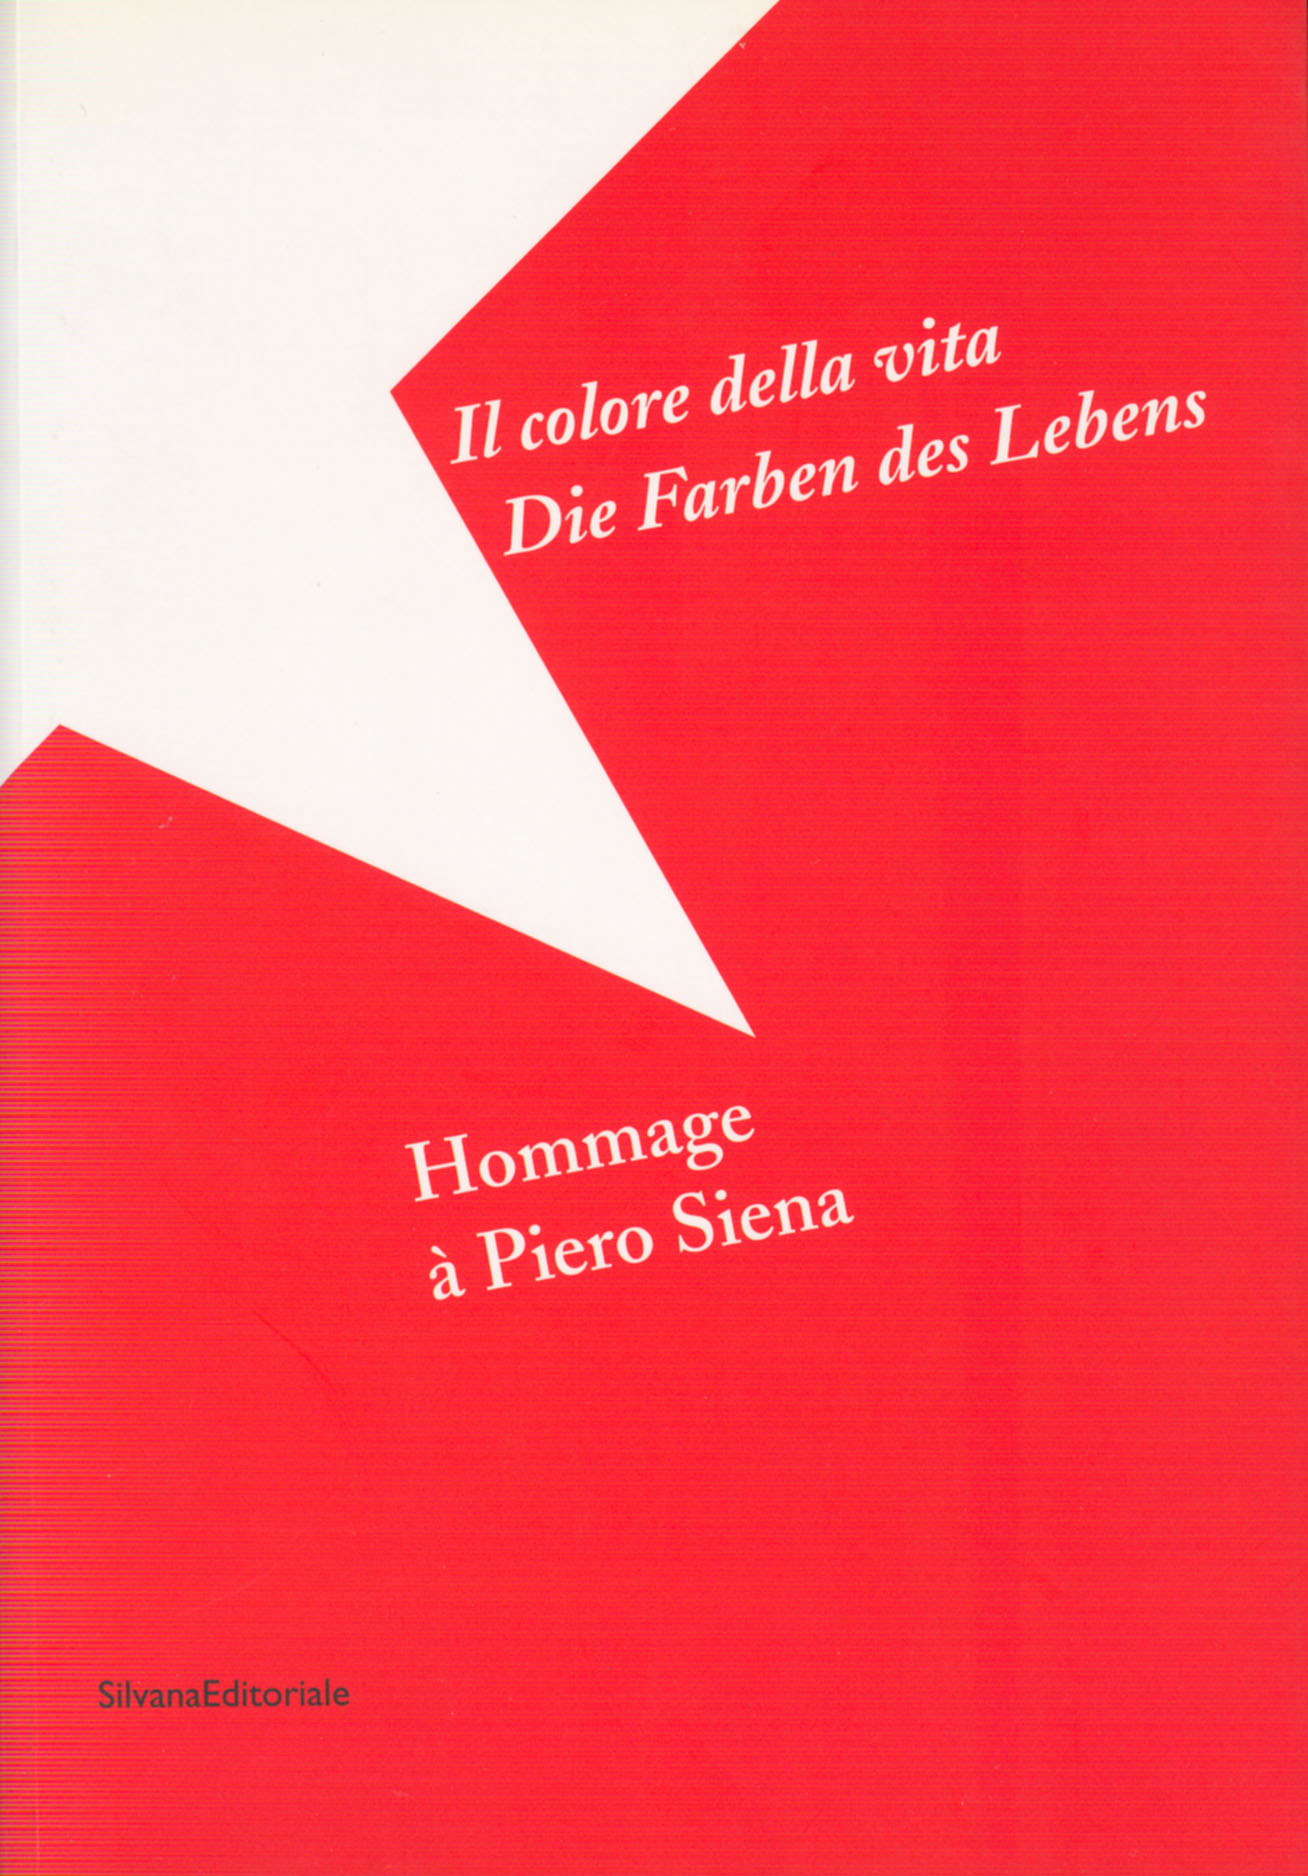 Hommage à Piero Siena, SilvanaEditoriale 2004